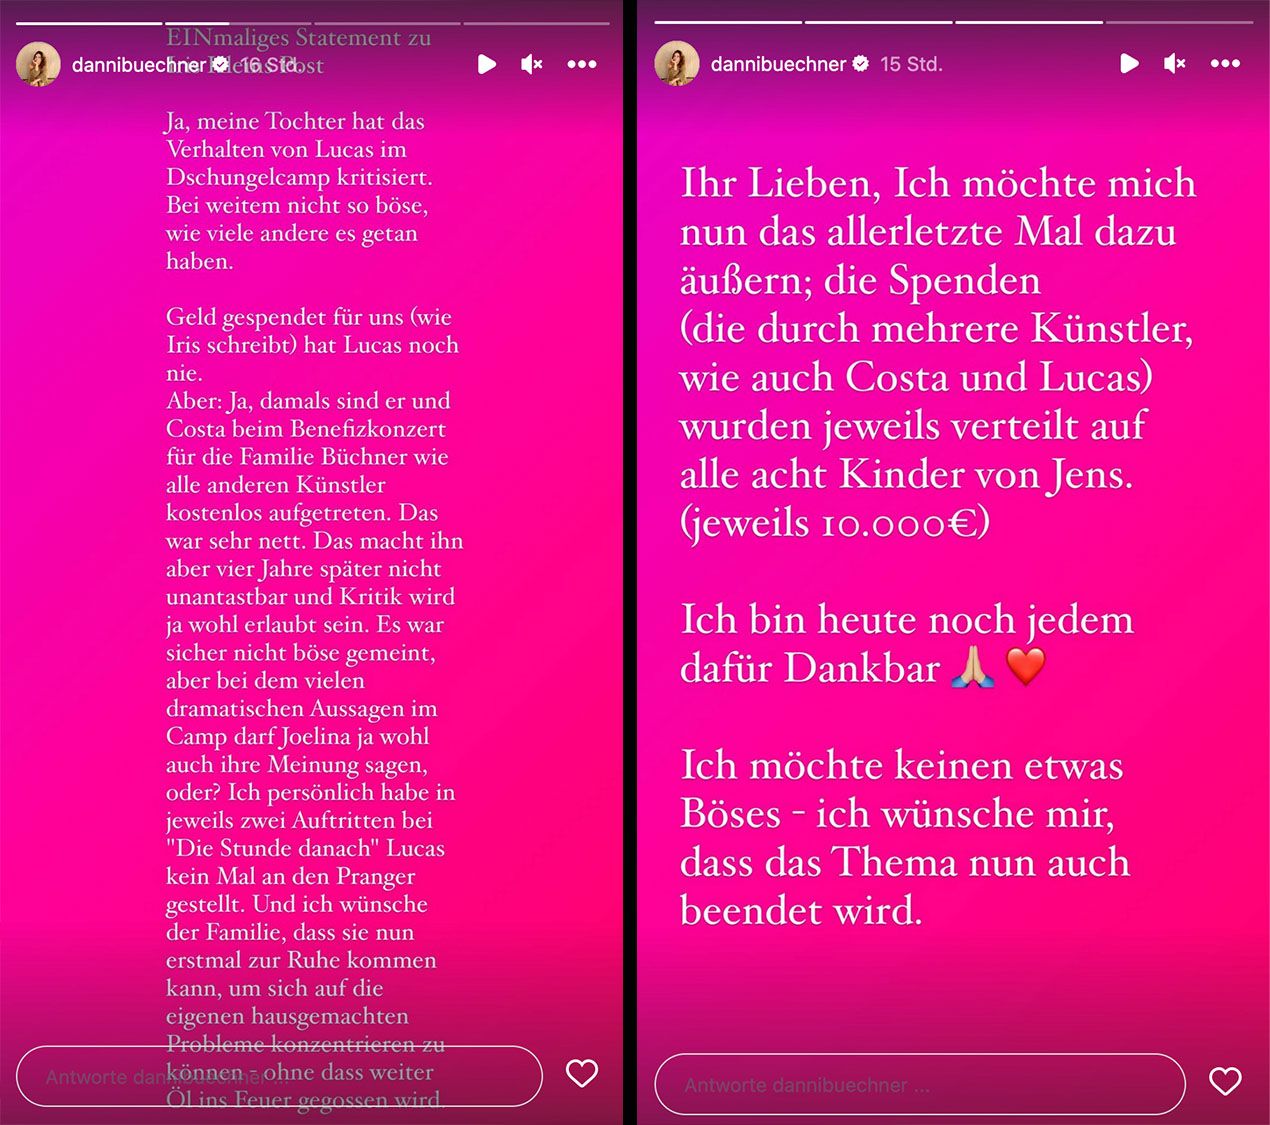 Iris Klein: Wegen Kritik an Lucas wettert sie gegen Daniela Büchner